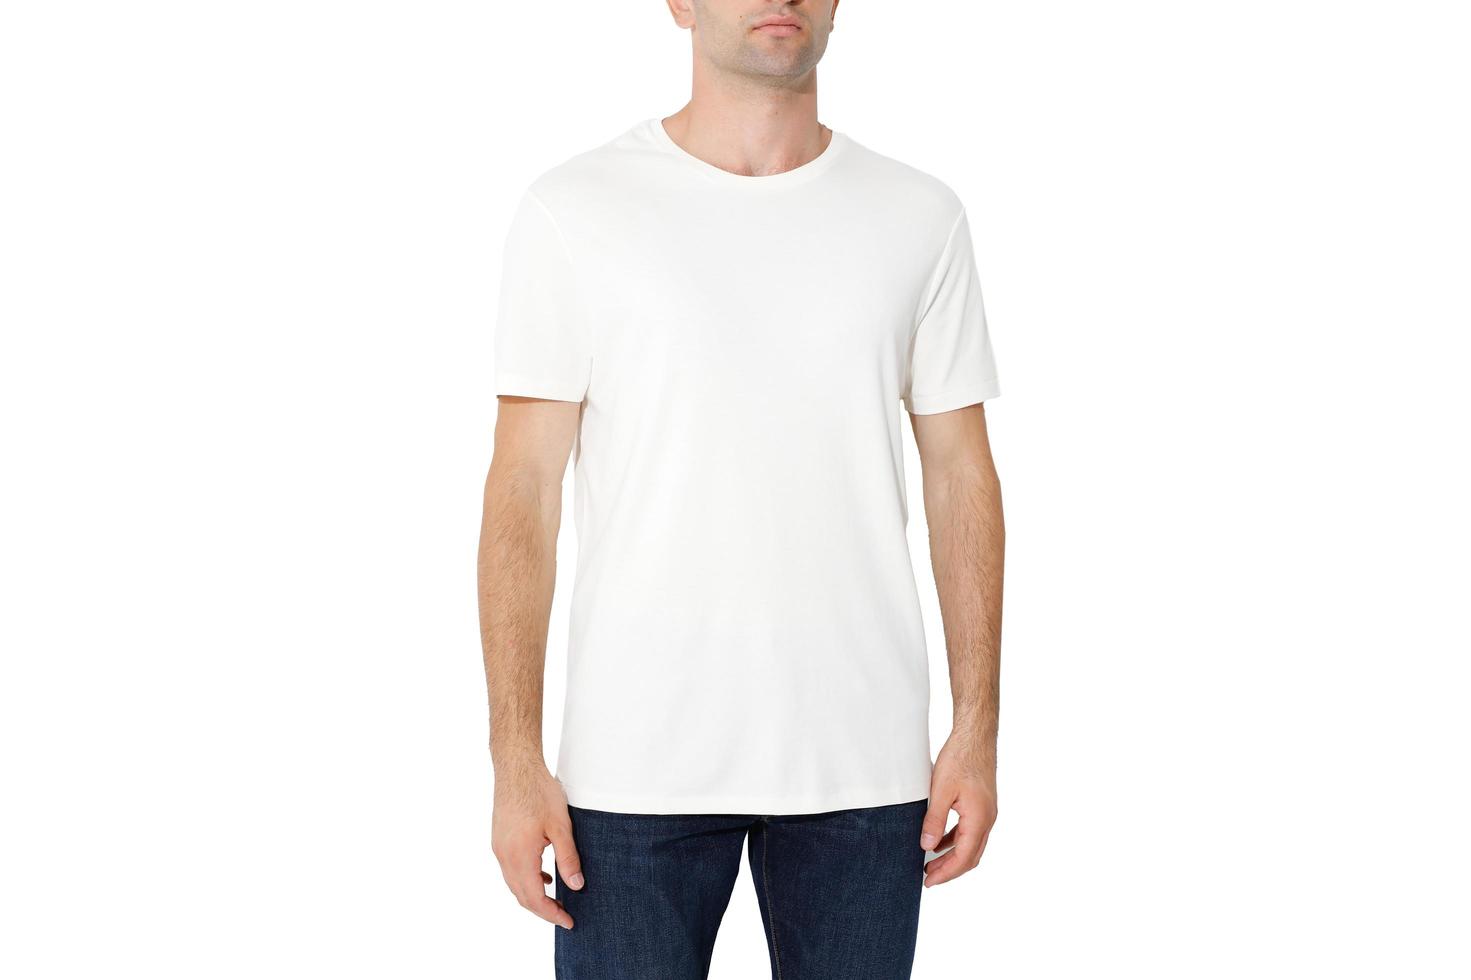 T-Shirt auf einem Mann, isoliert auf weißem Hintergrund, kopieren Sie den Raum foto